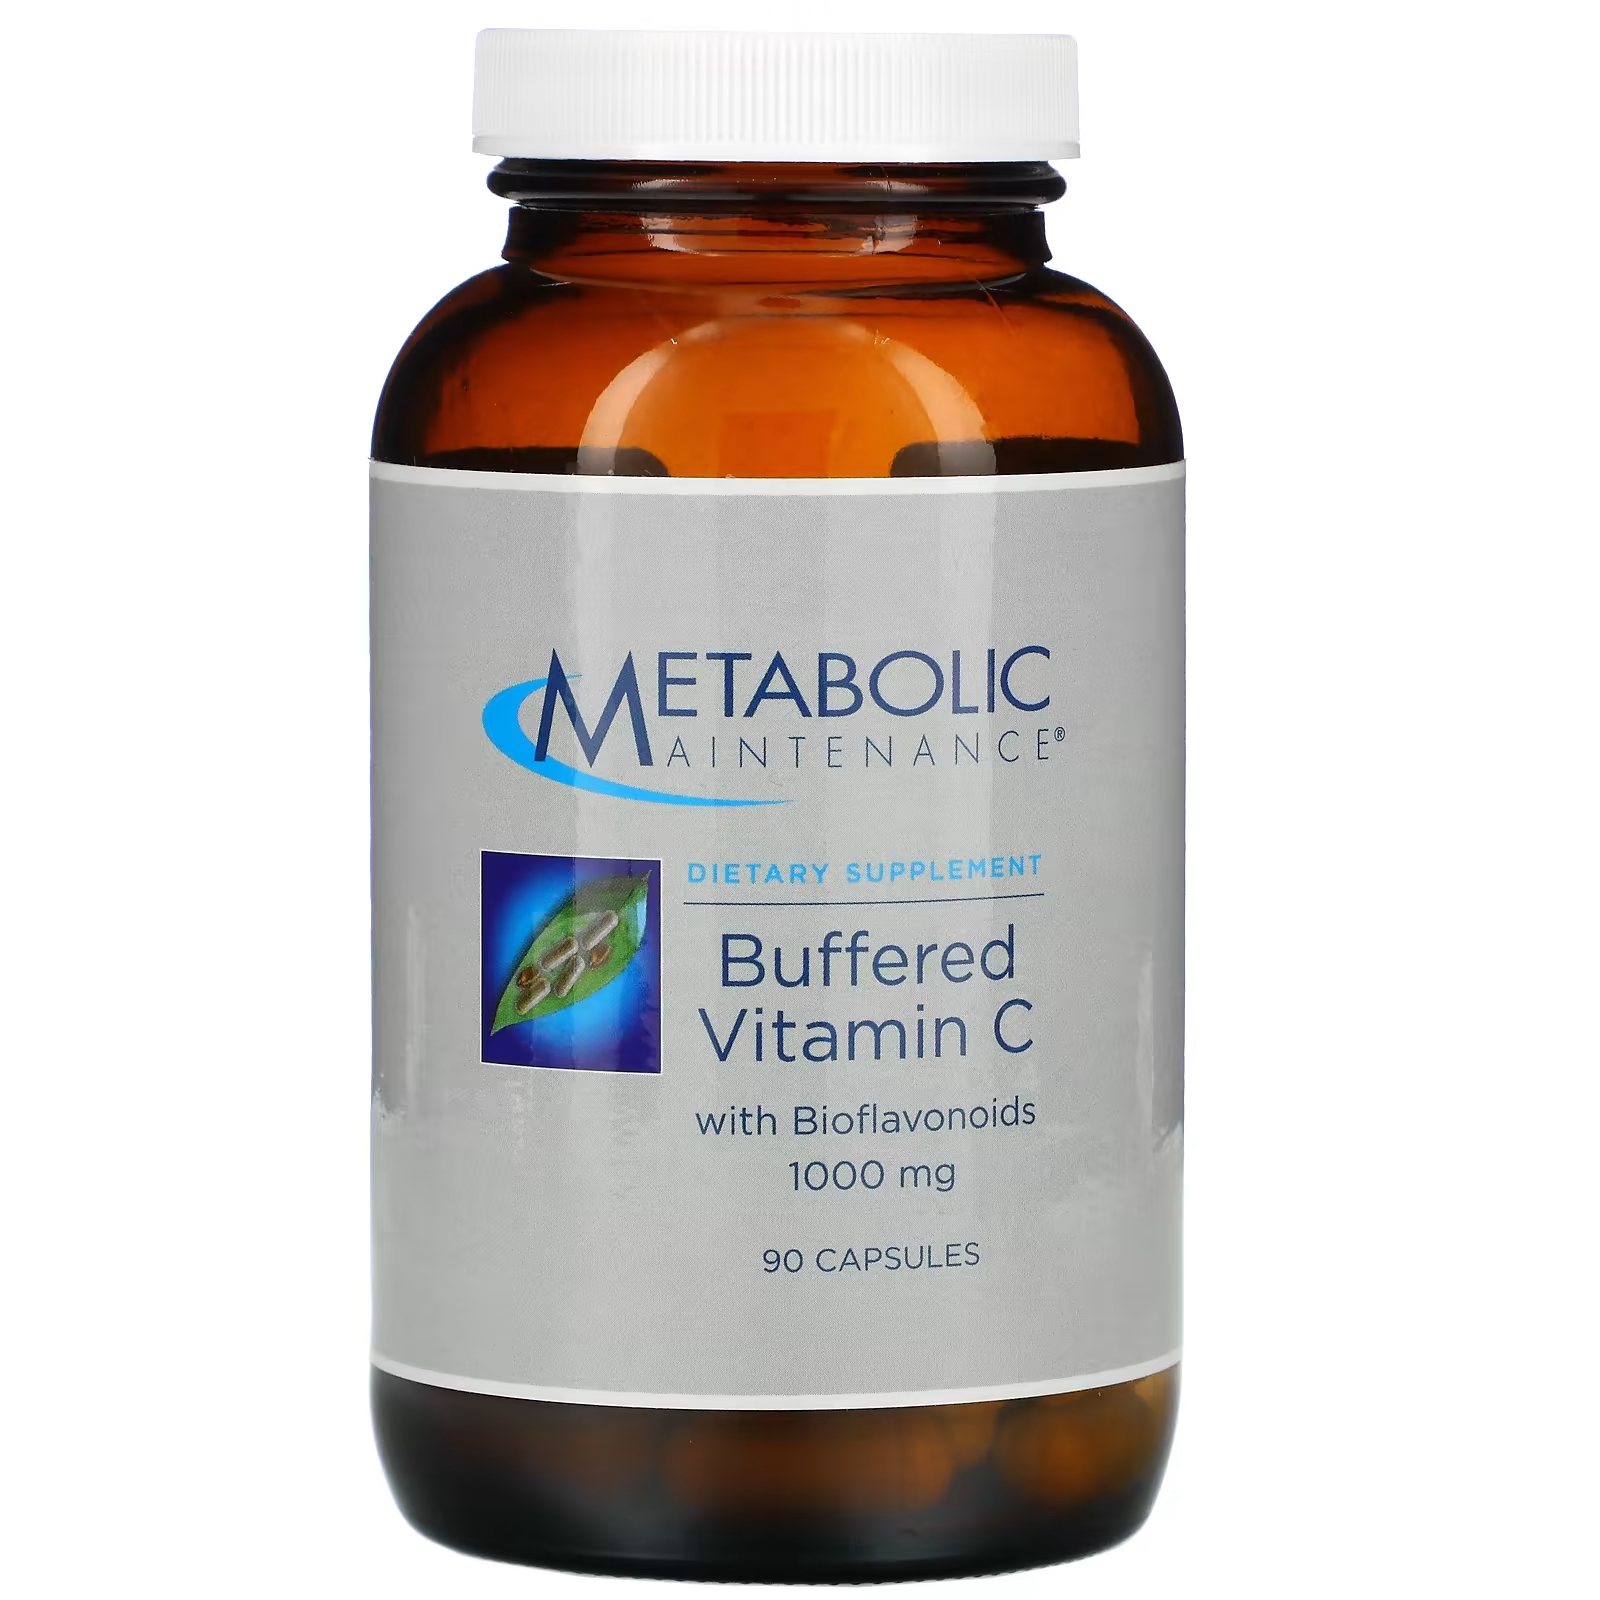 Буферизованный Витамин C Metabolic Maintenance с биофлавоноидами, 90 капсул витамин с swanson буферизованный с биофлавоноидами 100 капсул